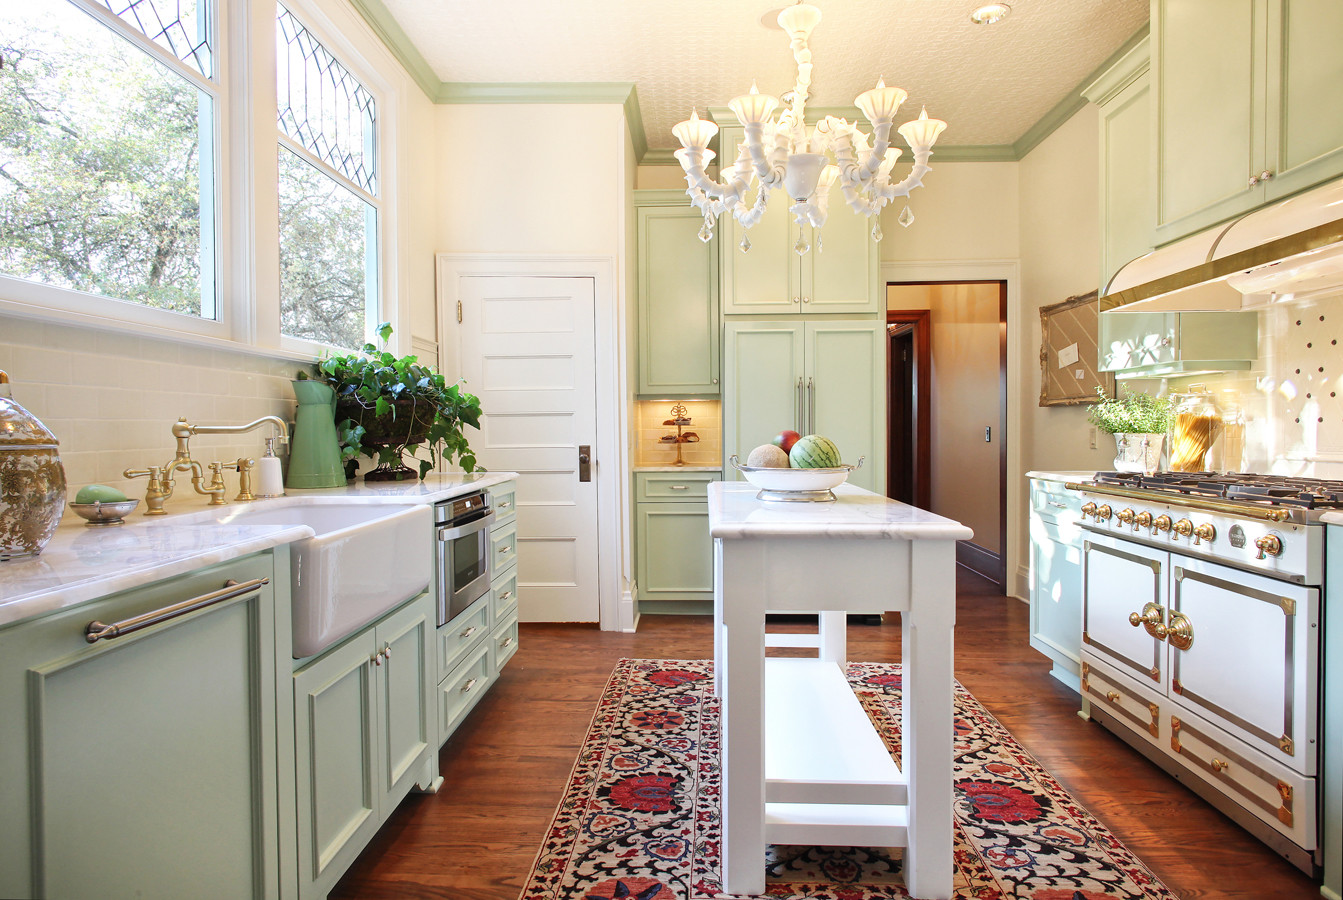 Pistachio  Kitchen cabinet styles, Green kitchen cabinets